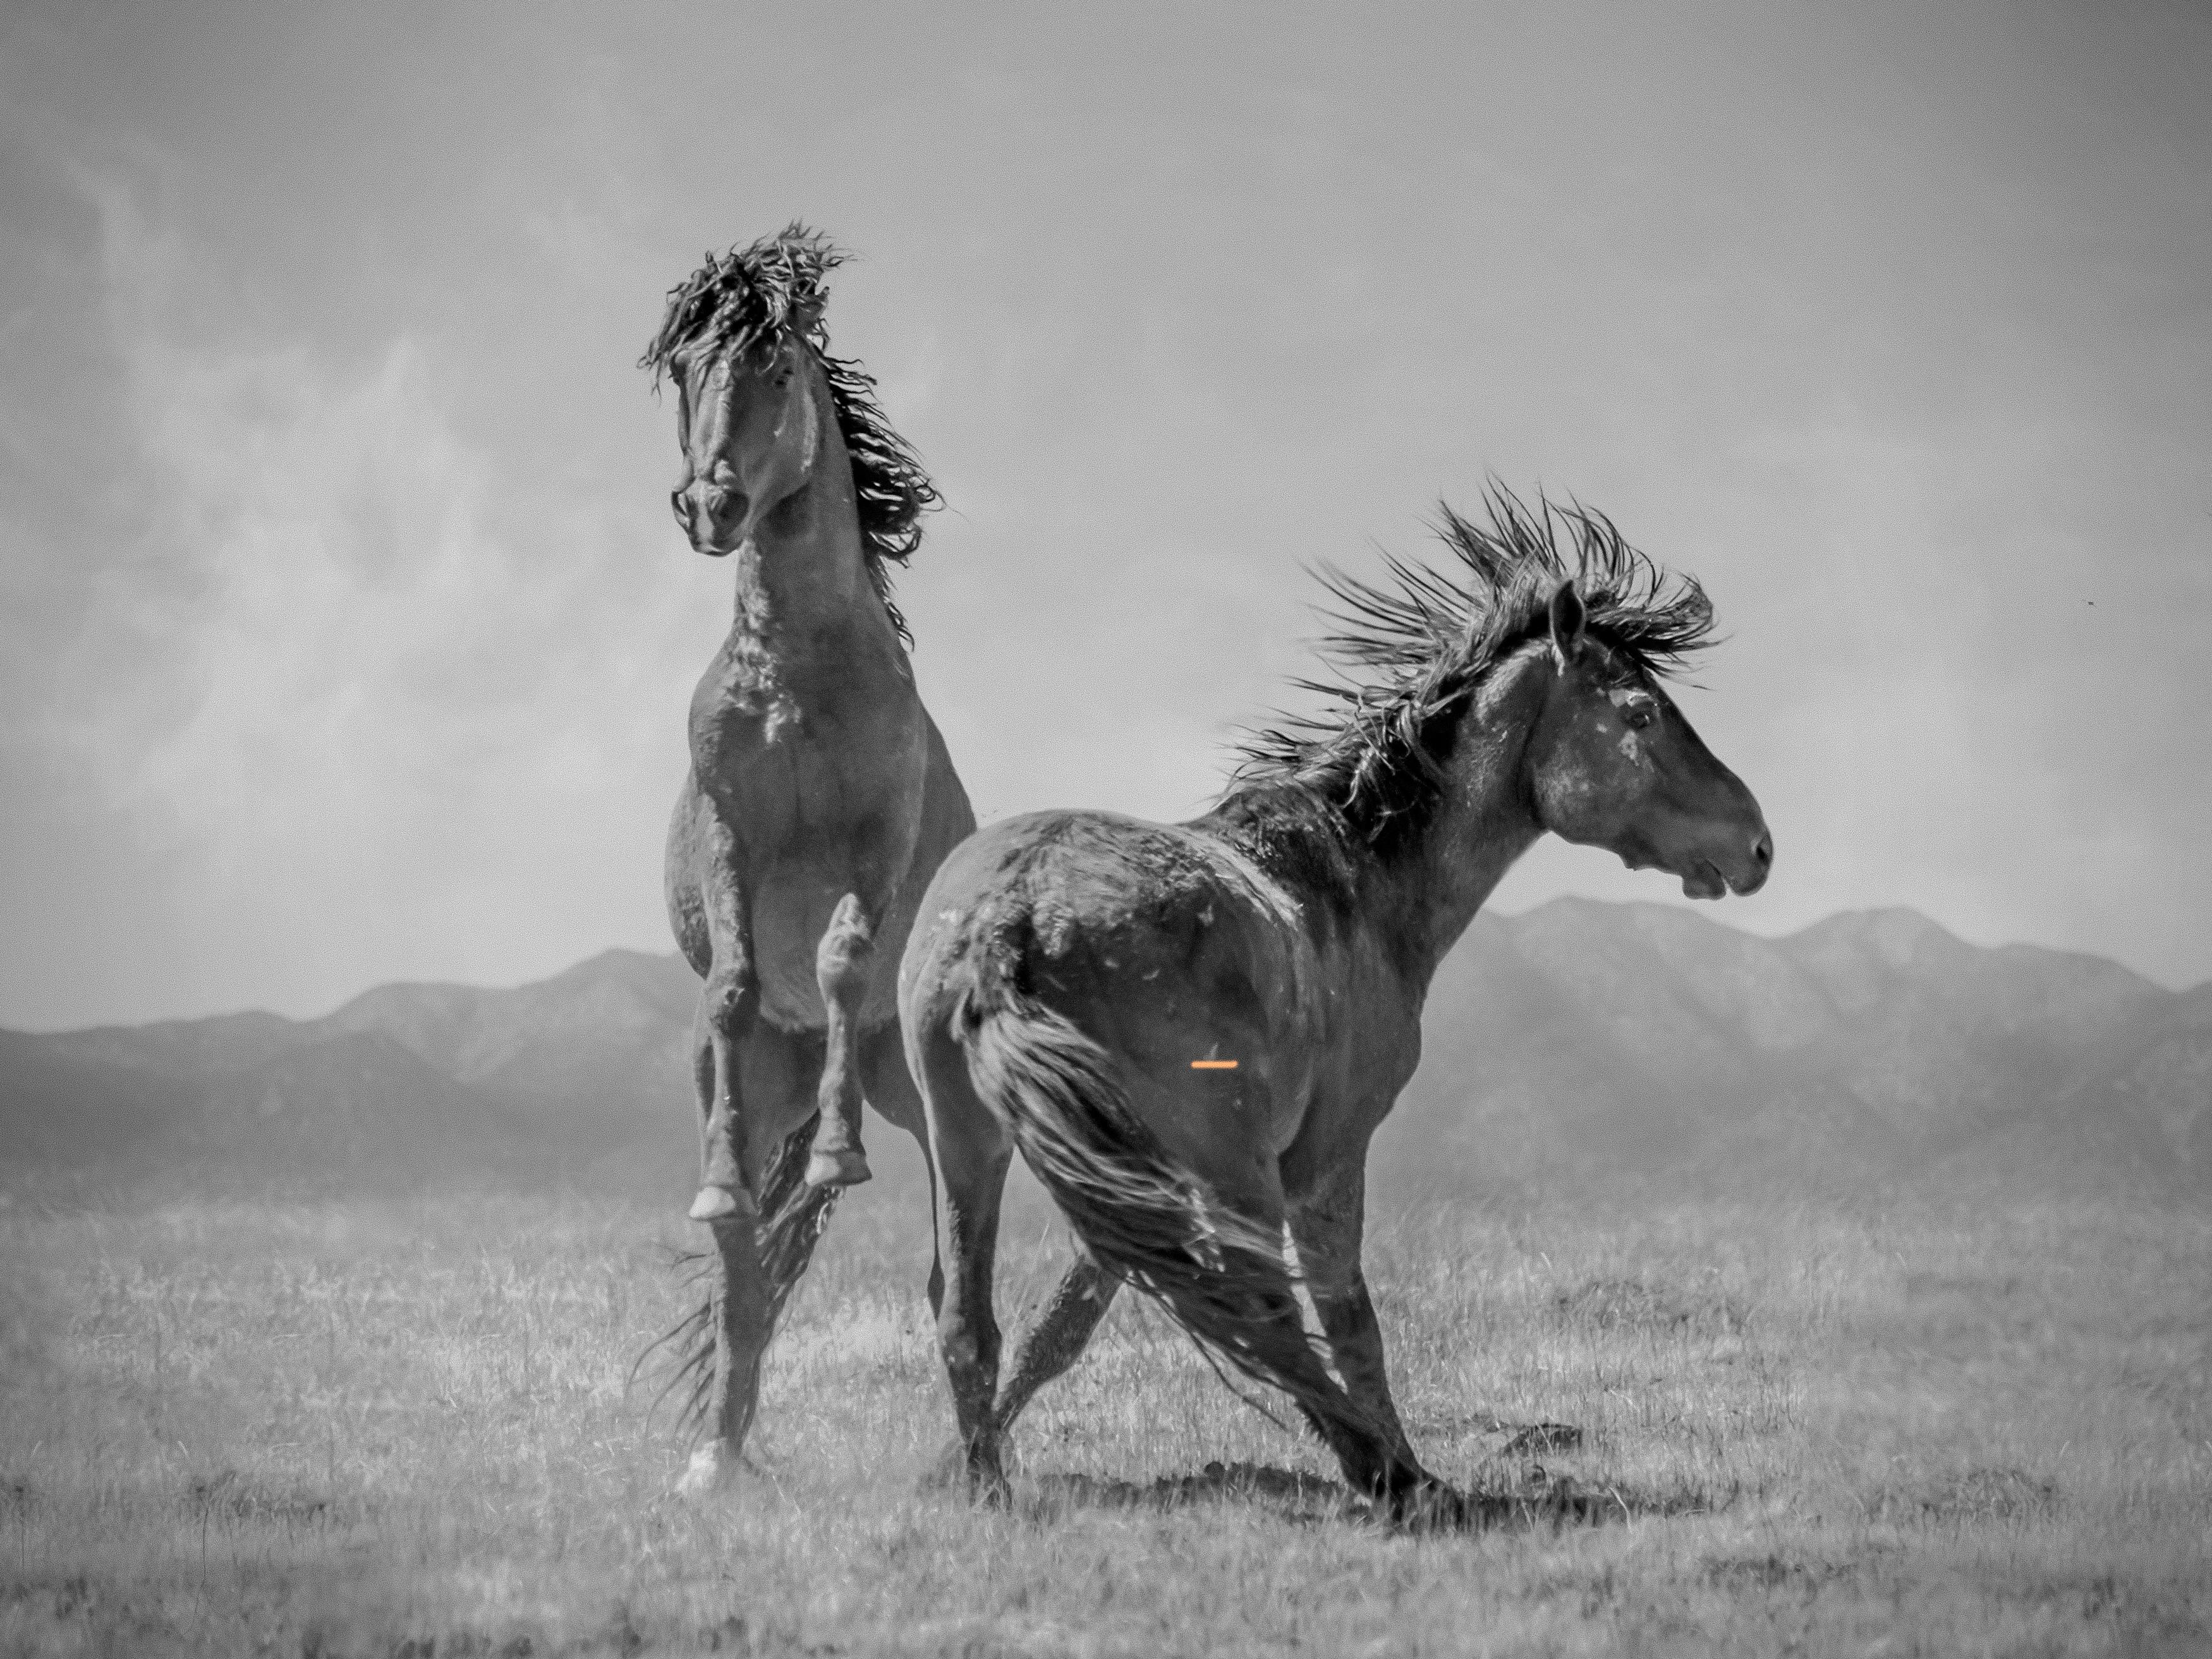 Shane Russeck Animal Print – „Wonder Horses“ 36x48 – Schwarz-Weiß-Fotografie, Wildpferde, Senf, unsigniert